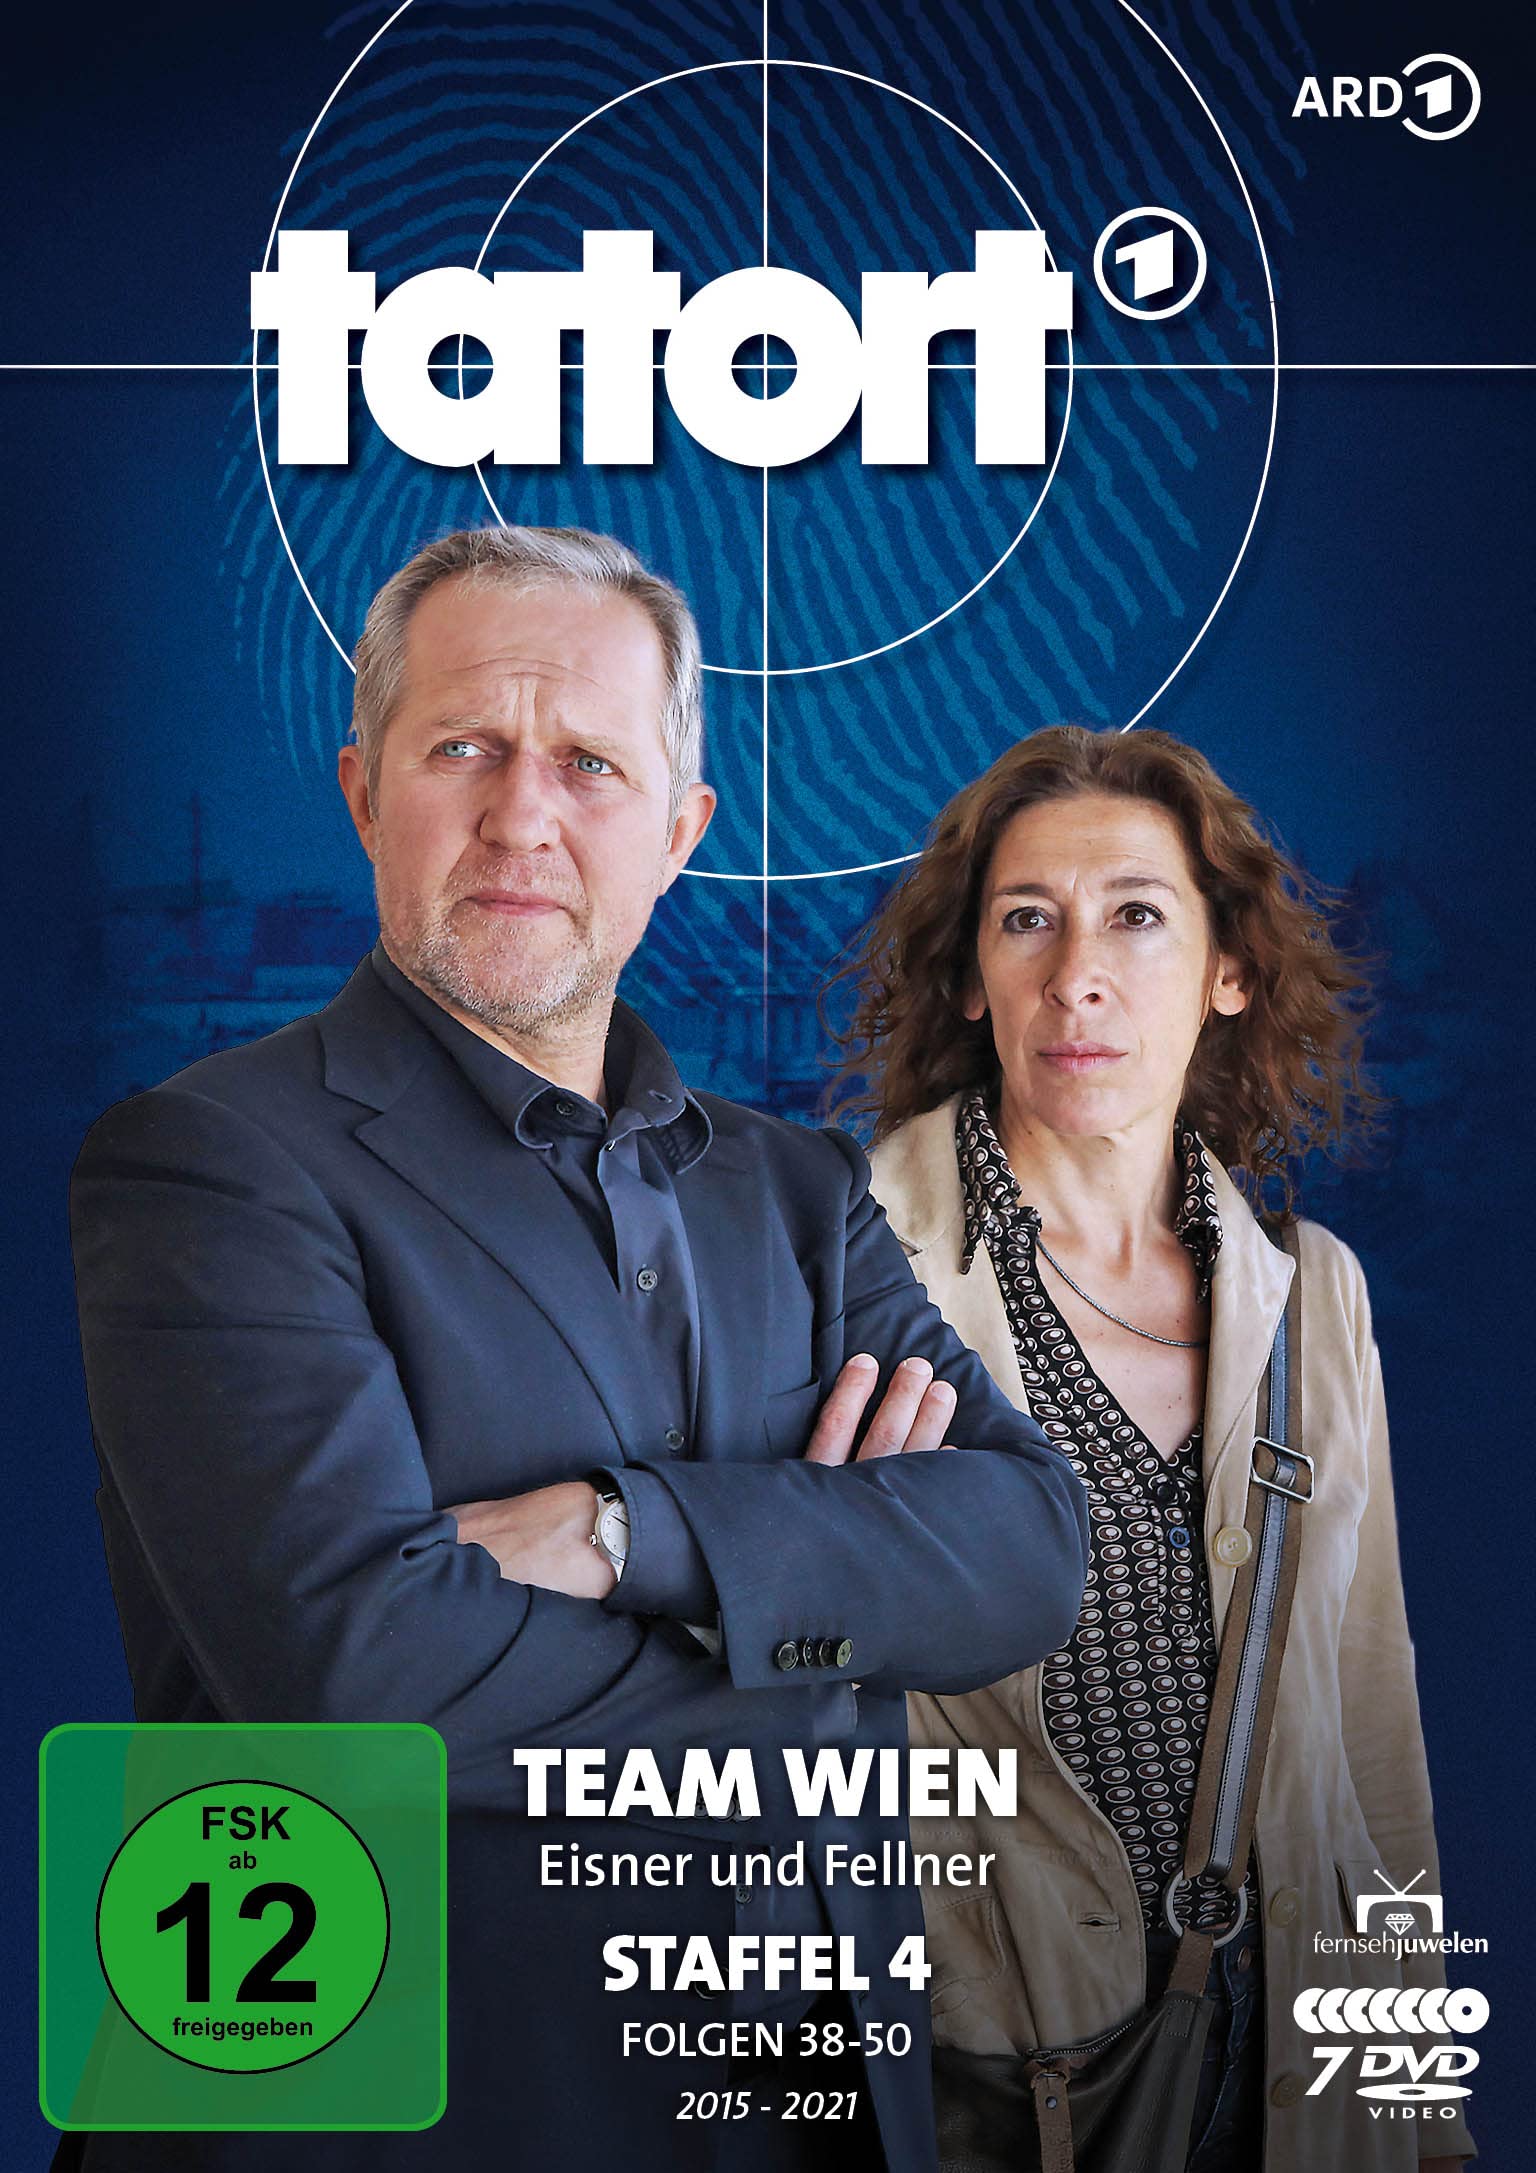 Tatort Wien - Inspektor Eisner ermittelt - Staffel 4 (Folgen 38-50) [7 DVDs]